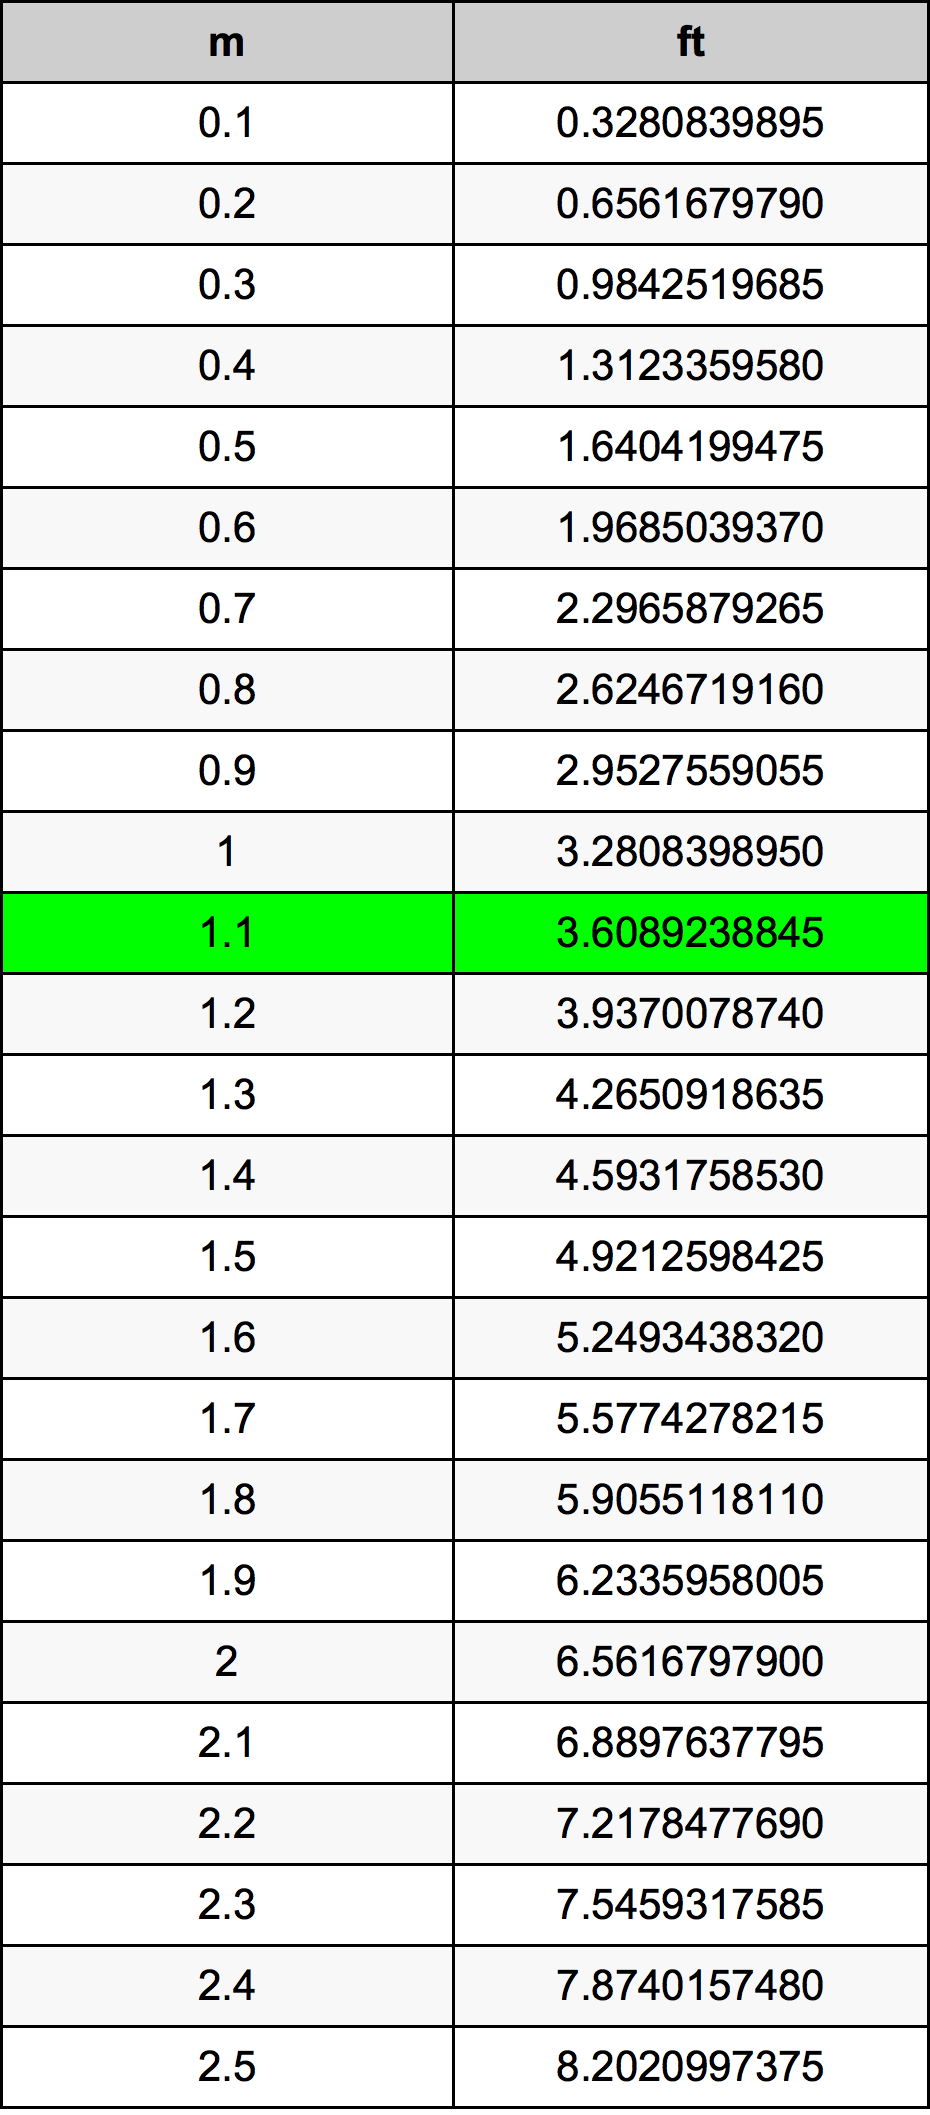 1.1 Metru tabelul de conversie